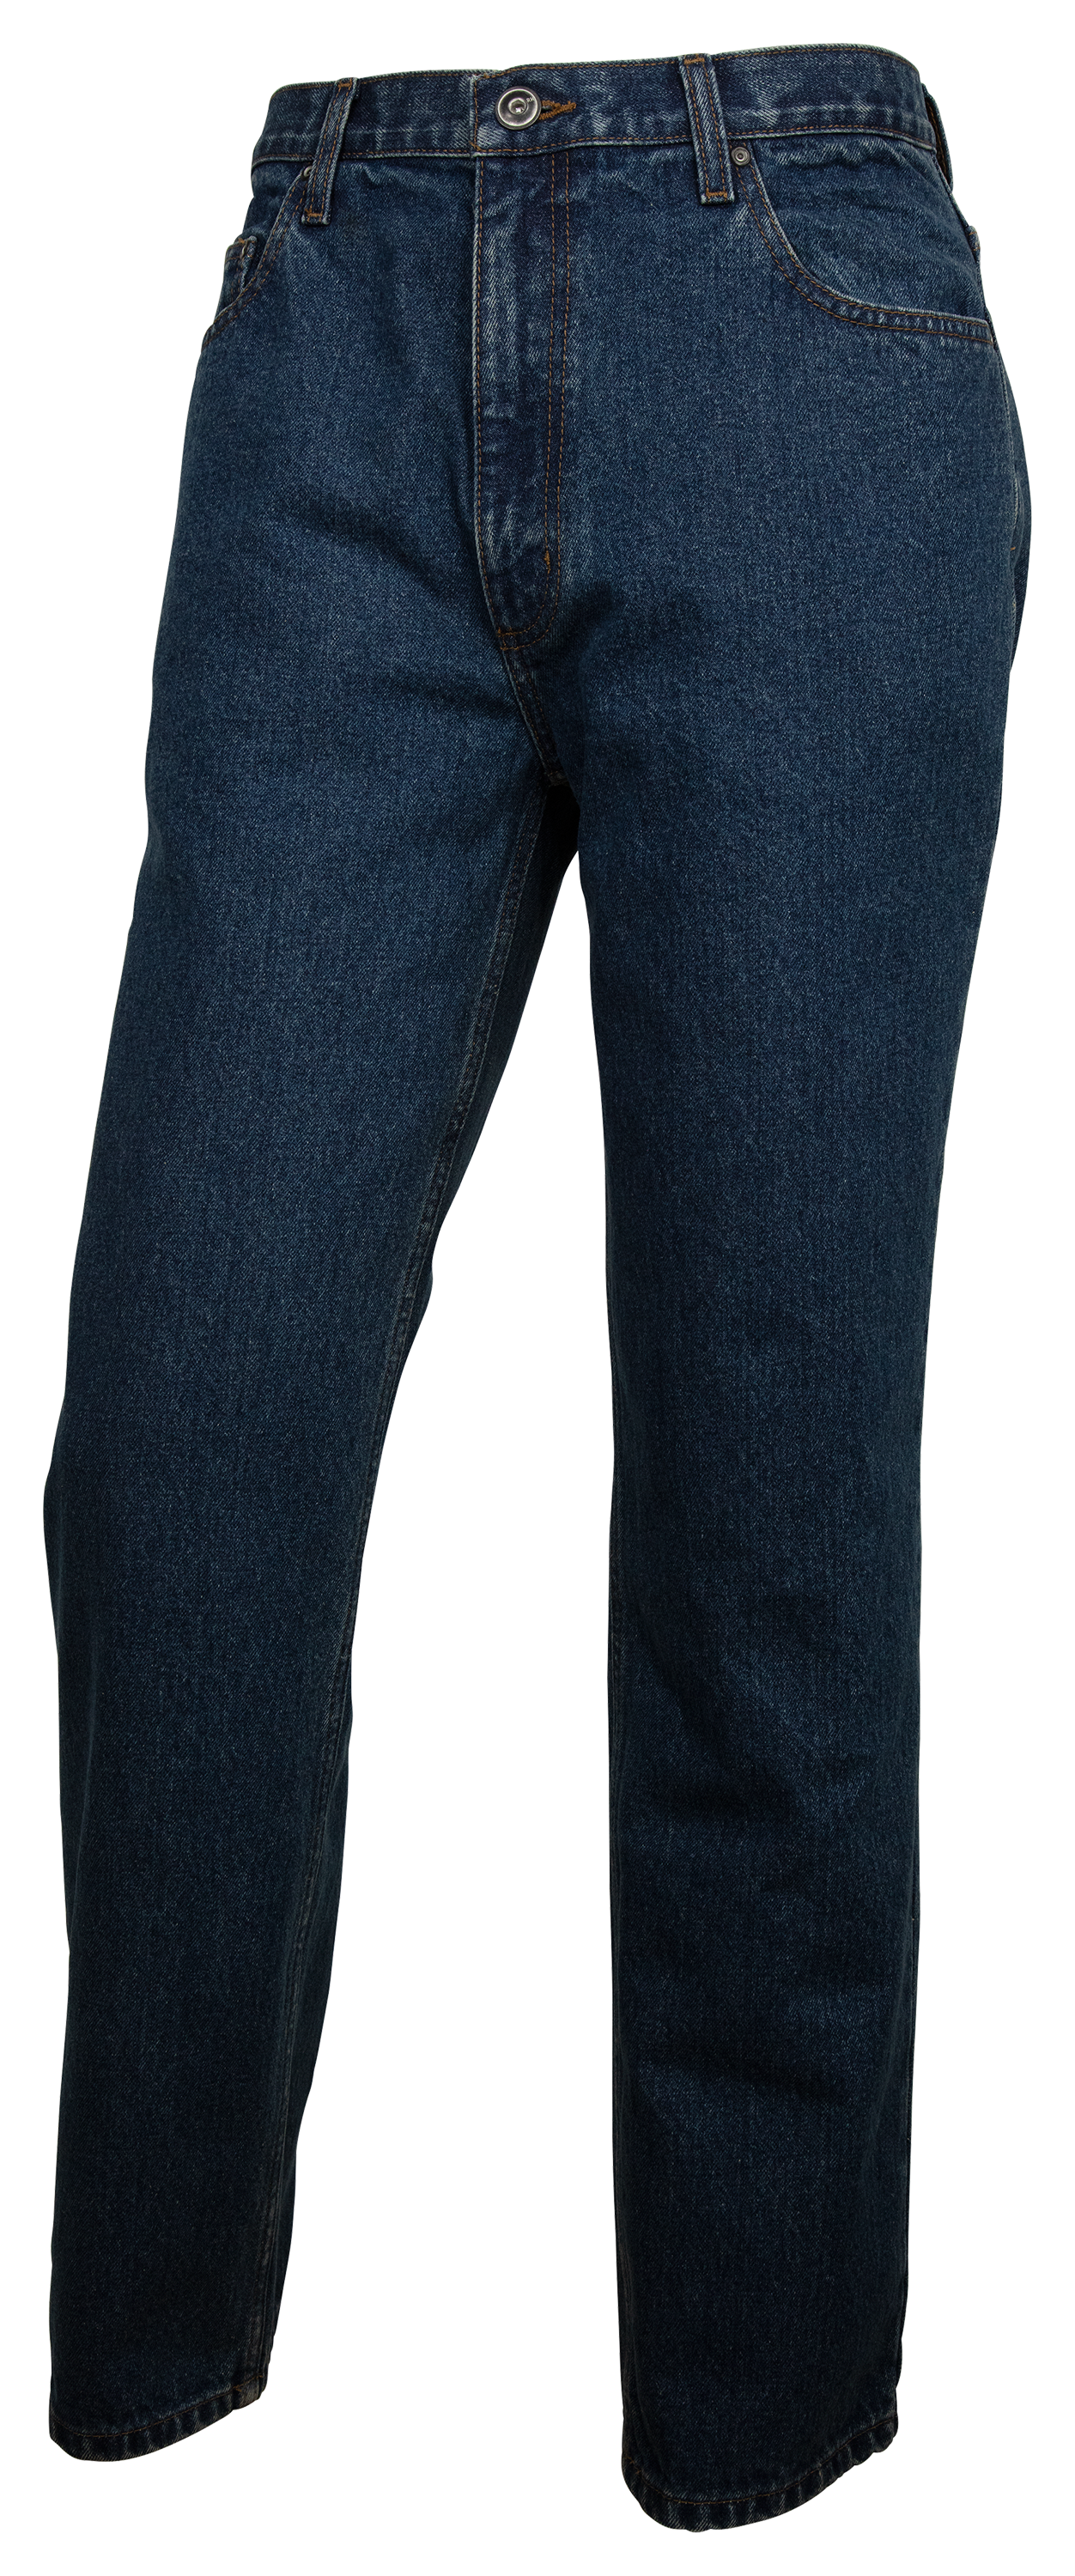 Red Head Jeans Men's Size 34 x 32 Blue Dark Wash Straight Leg 5 Pocket  Design - Swedemom